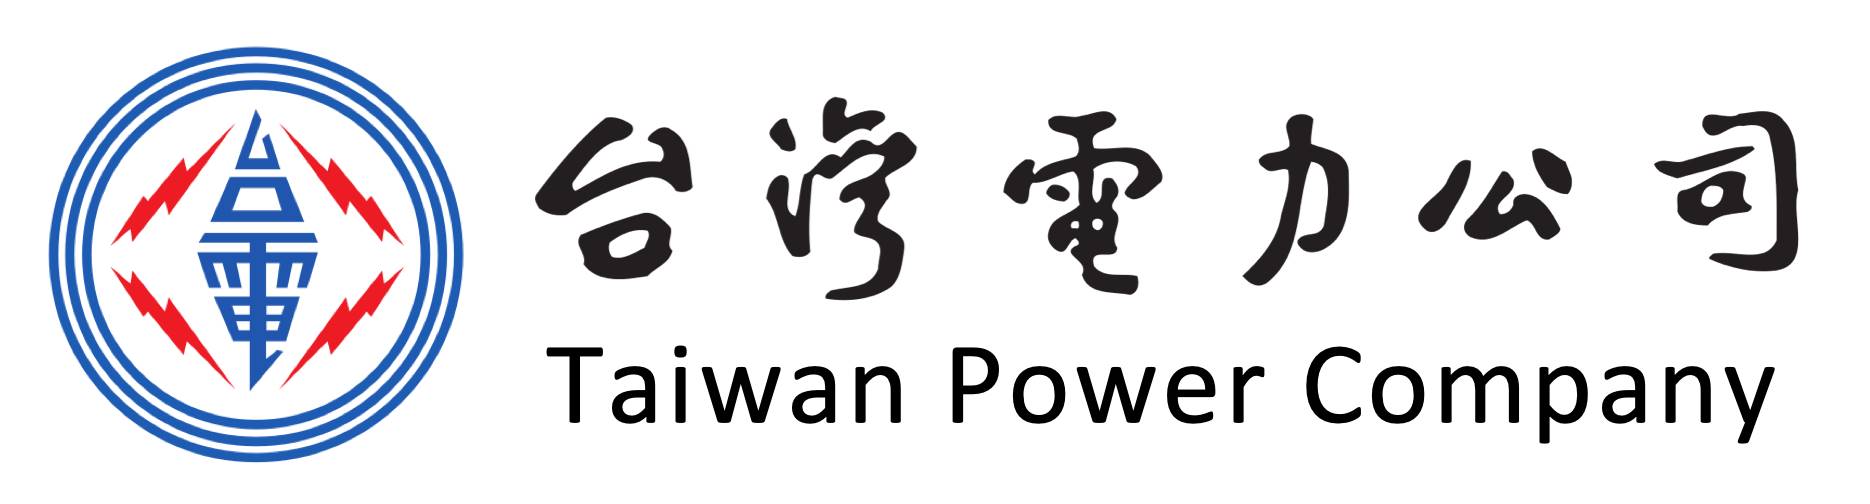 台灣電力公司Logo